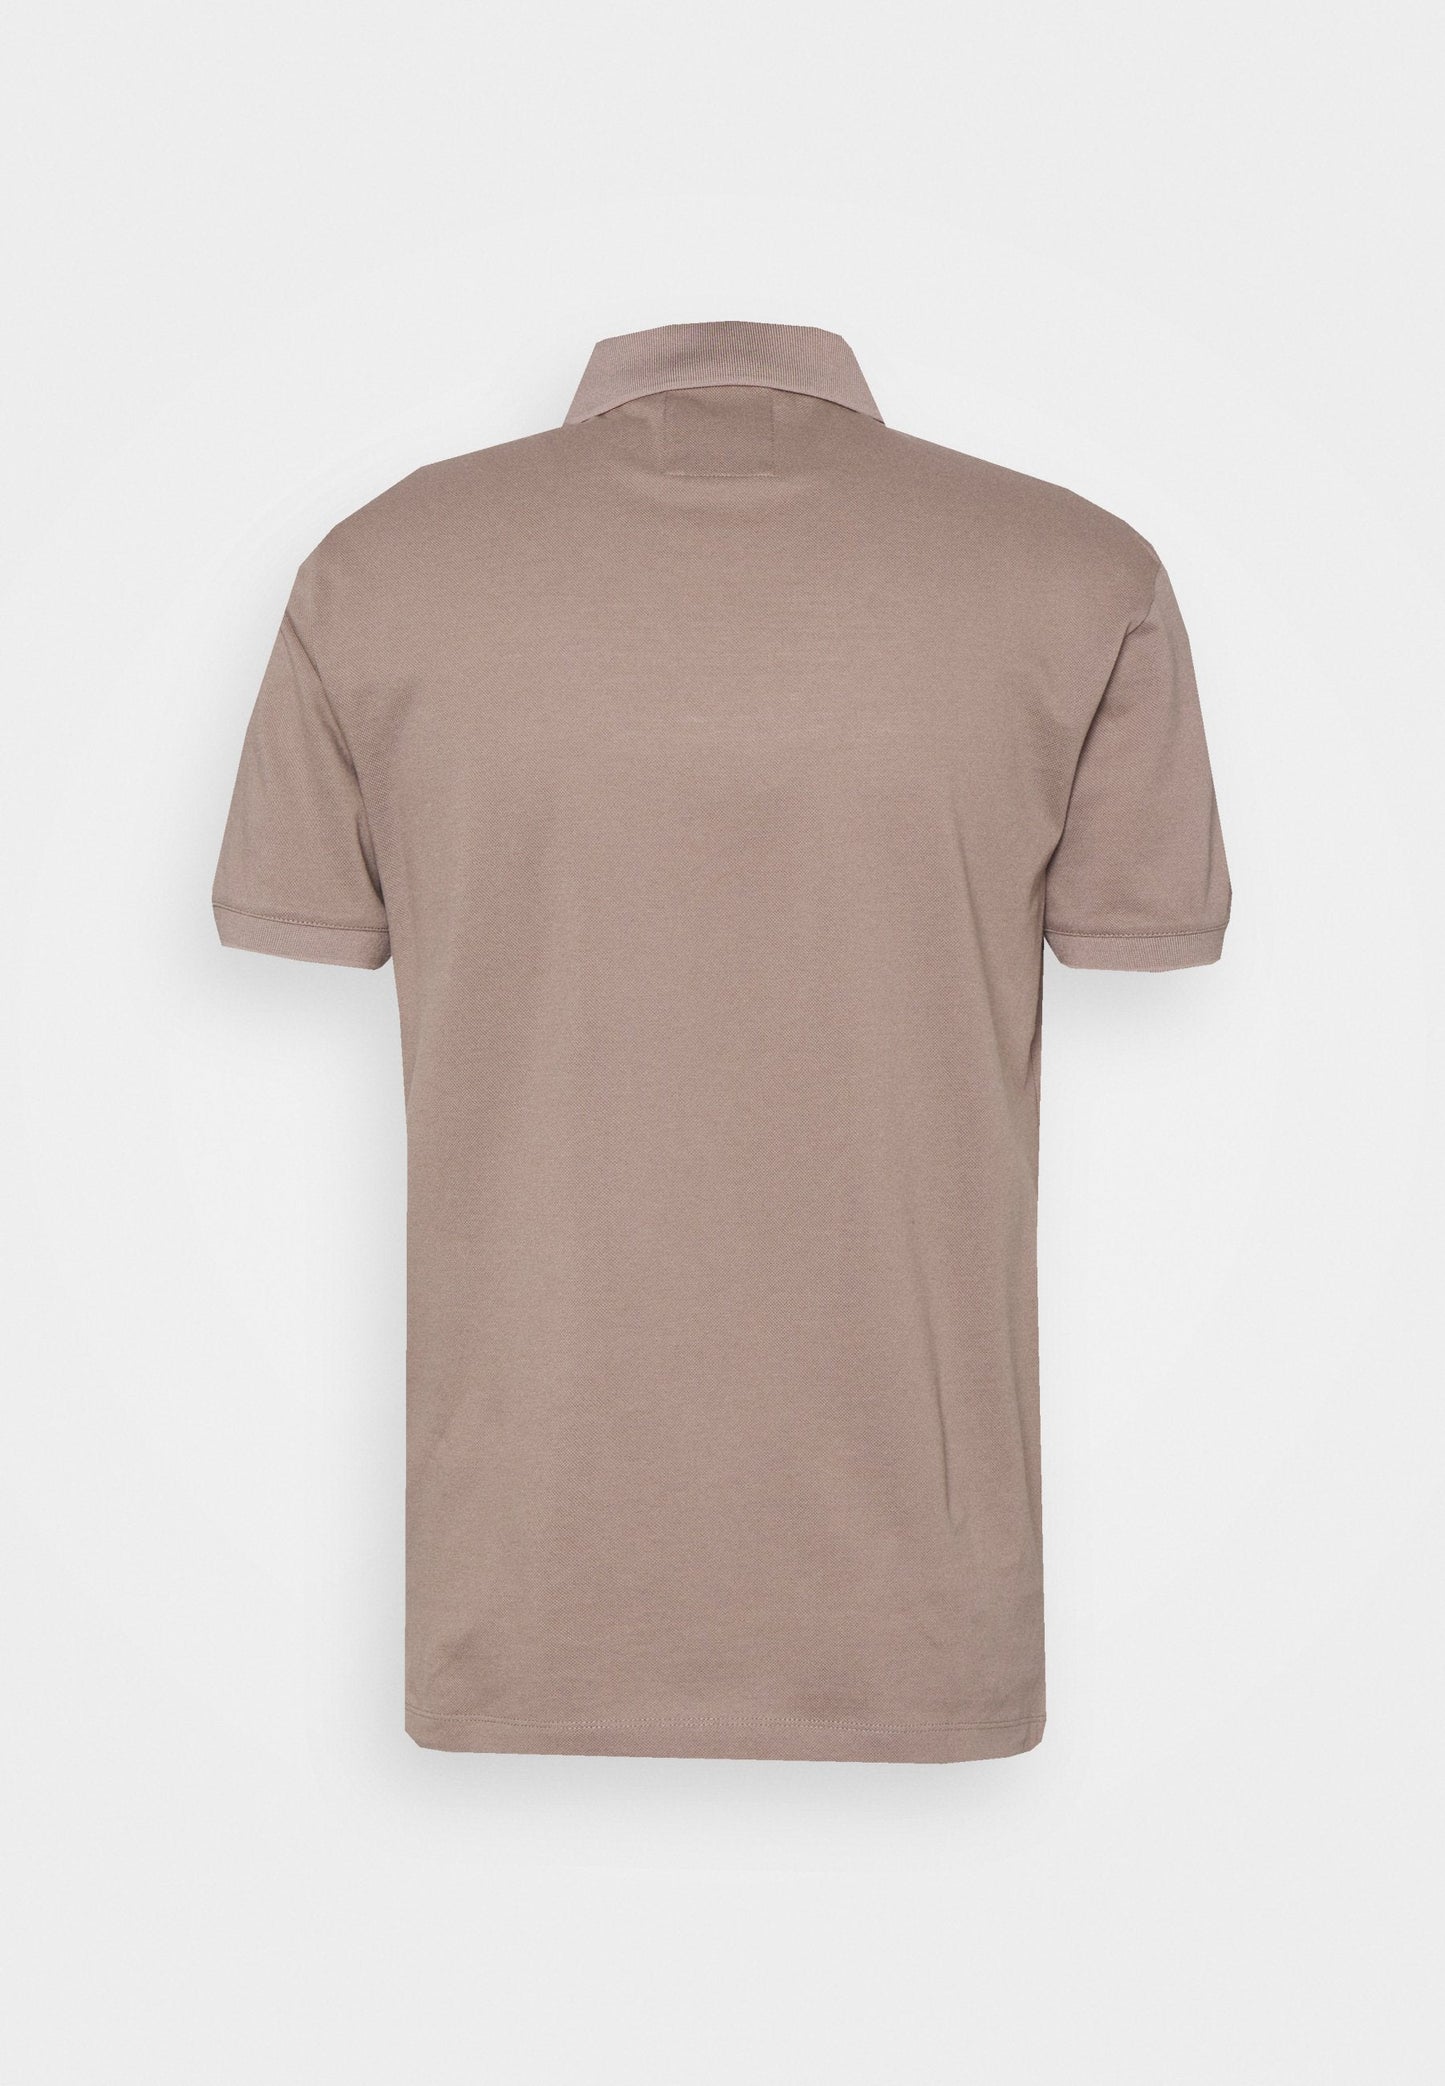 Emporio Armani 8N1FQ2 Polo T-Shirt - 144 Incenso - Escape Menswear